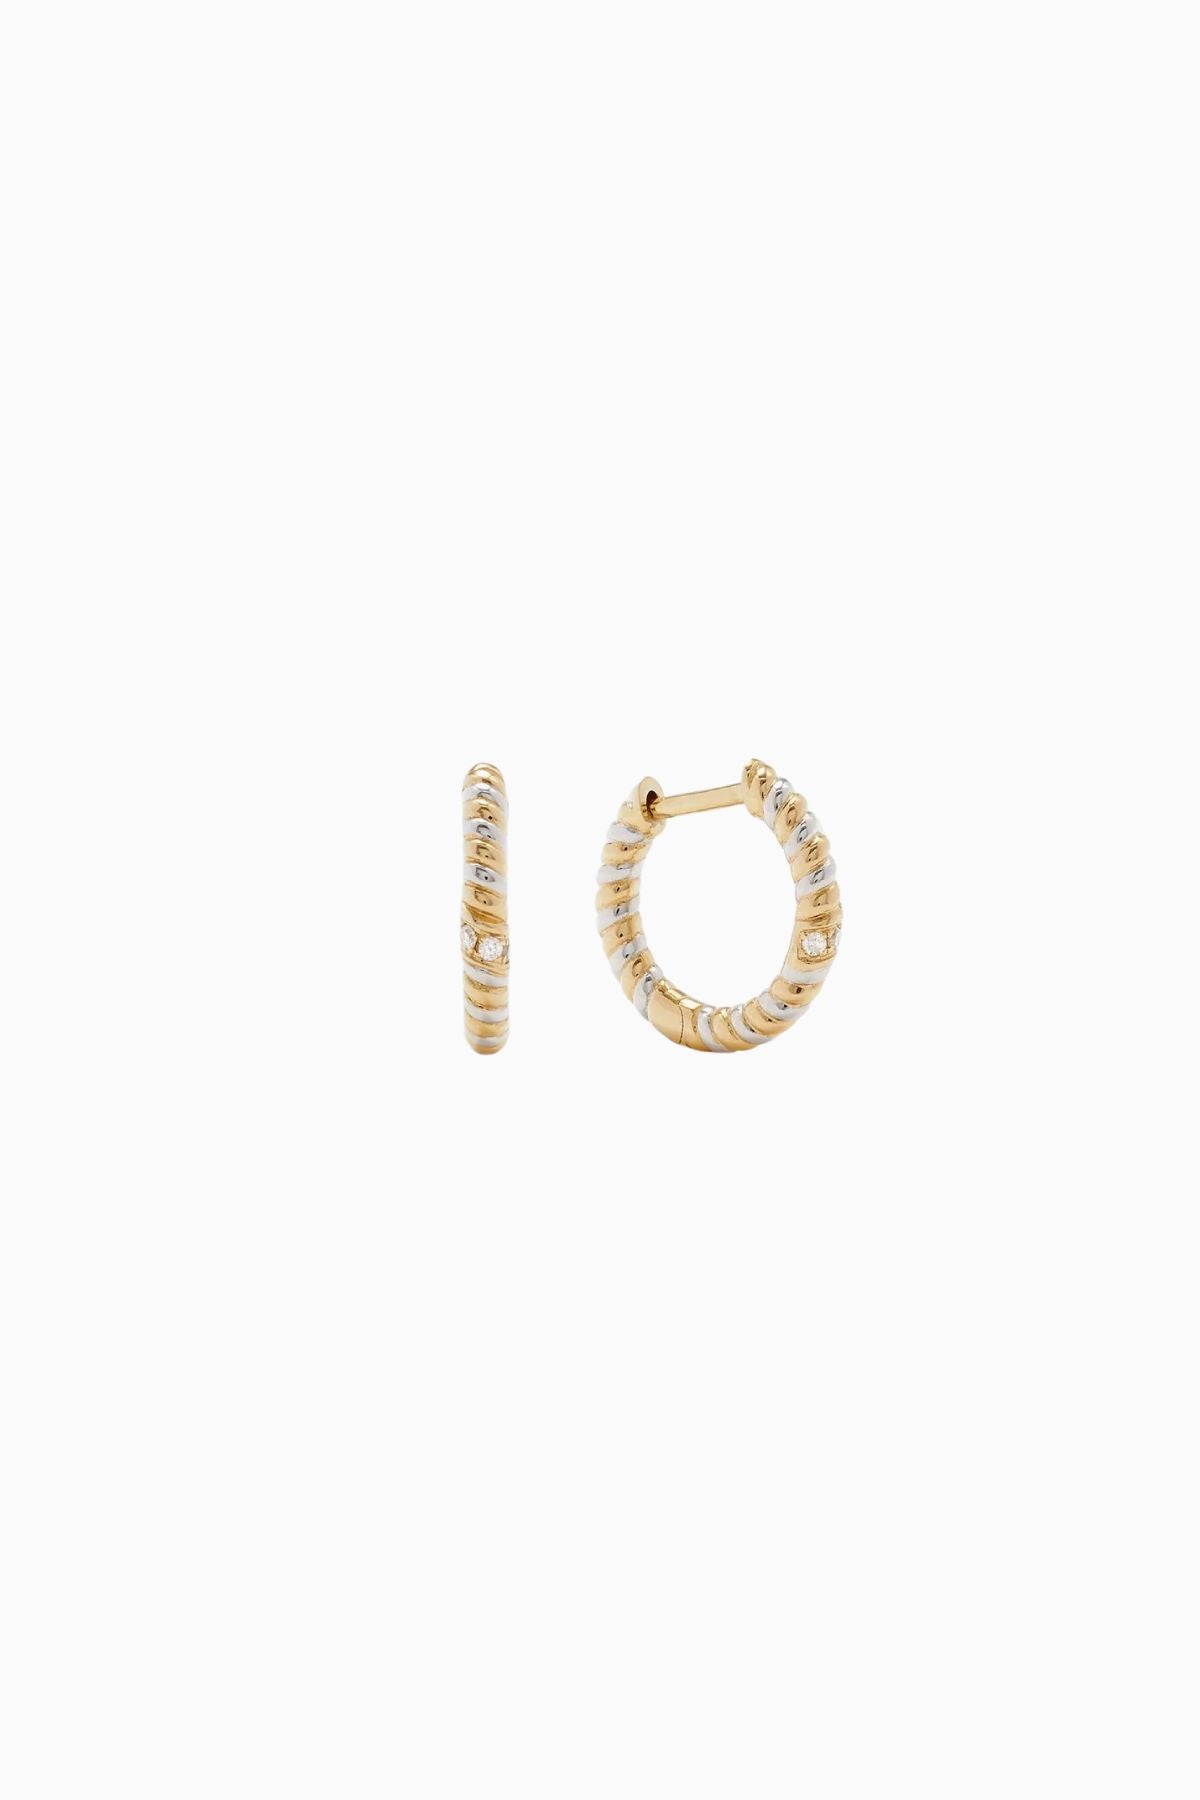 Yvonne Léon Mini Twist Diamond Earrings - Yellow/ White Gold